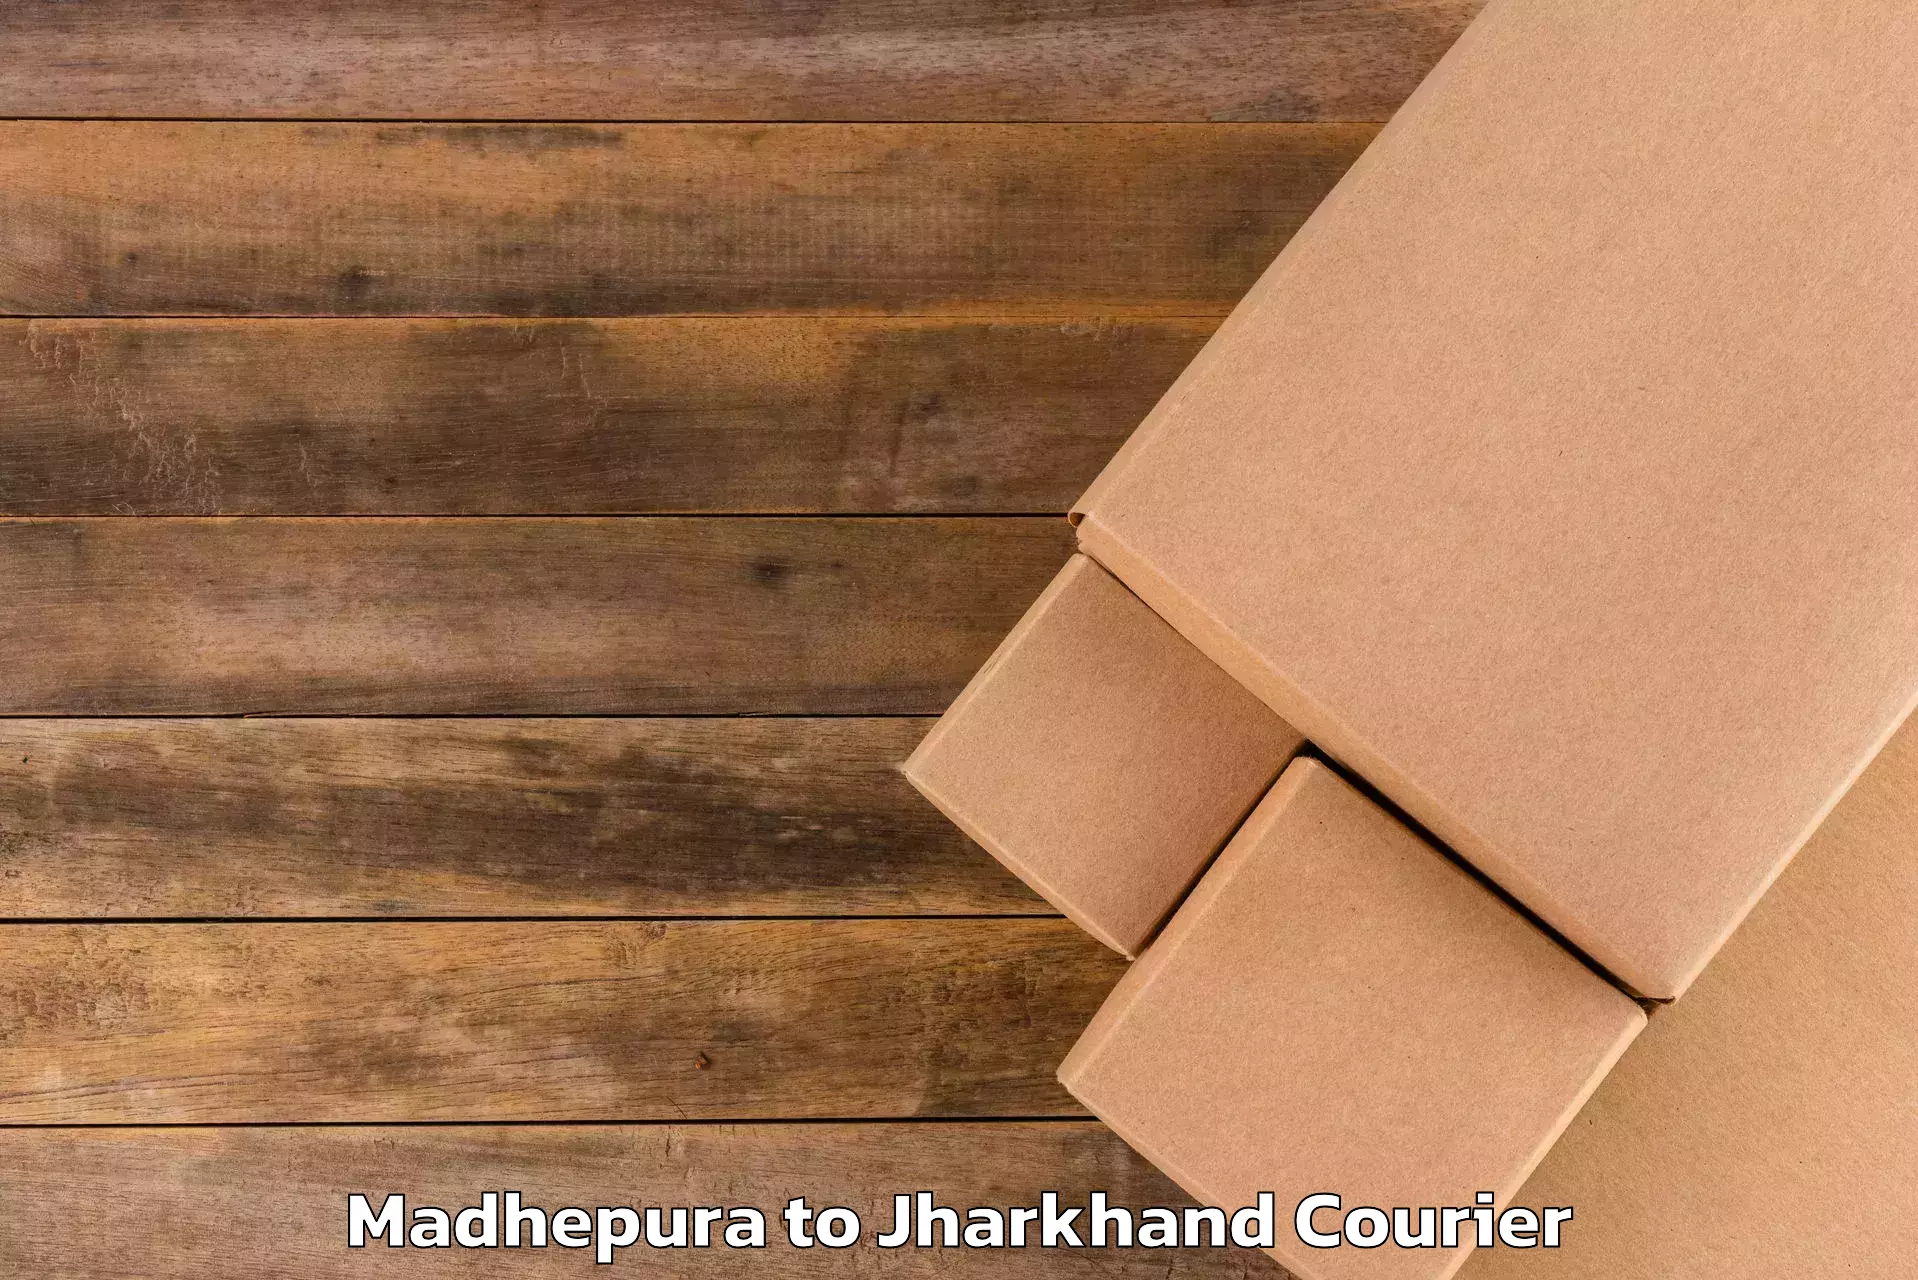 Baggage transport network Madhepura to Jharkhand